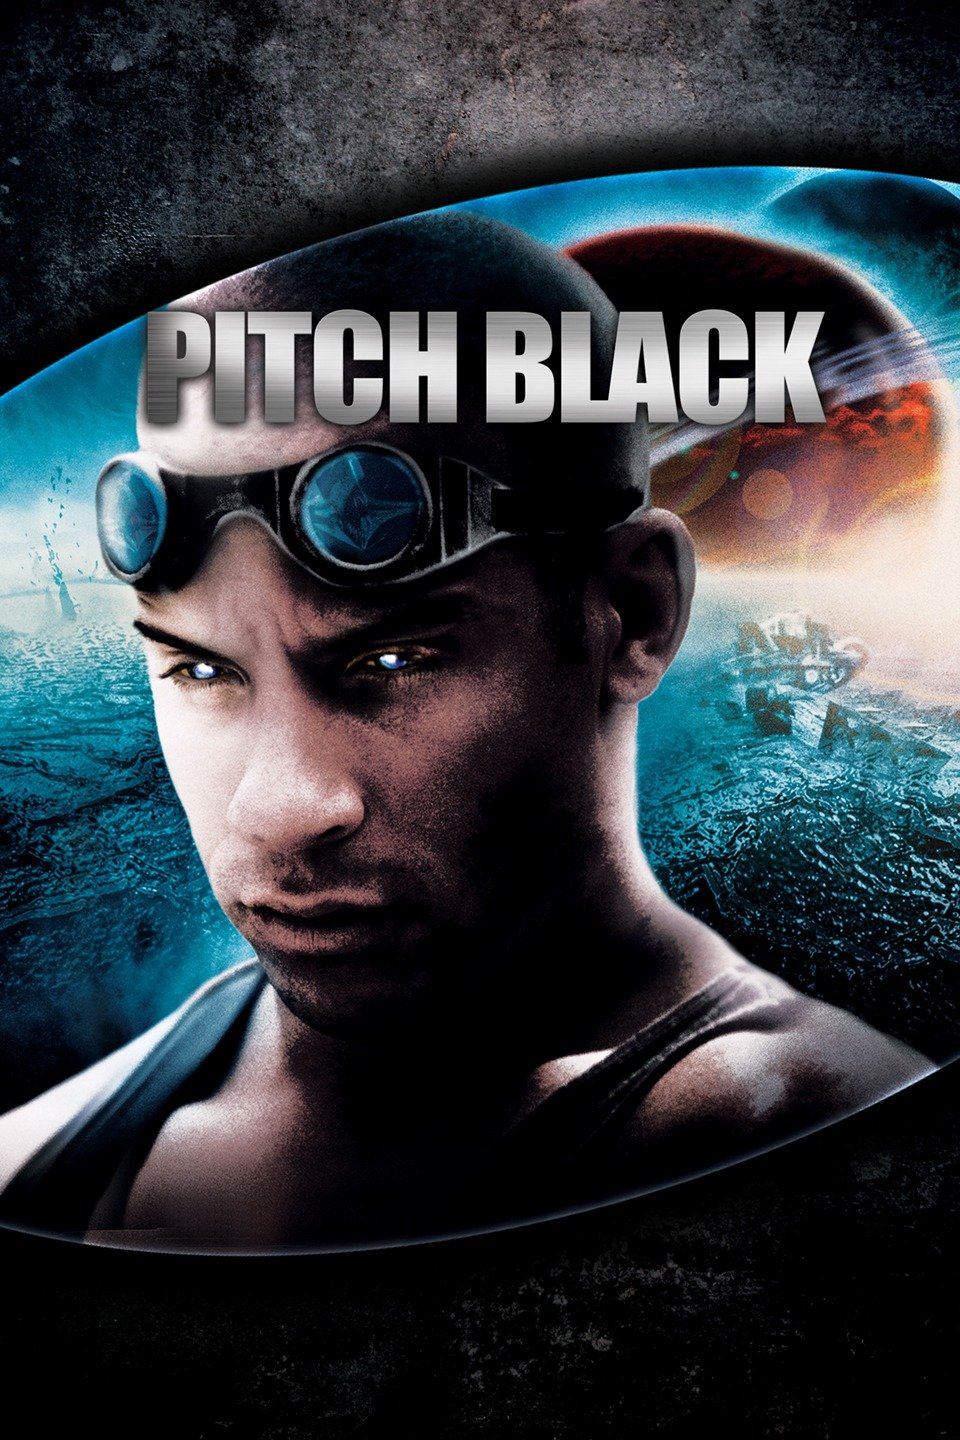 ดูหนังออนไลน์ฟรี Pitch Black of Riddick 2000 ริดดิค 1 ฝูงค้างคาวฉลามสยองจักรวาล